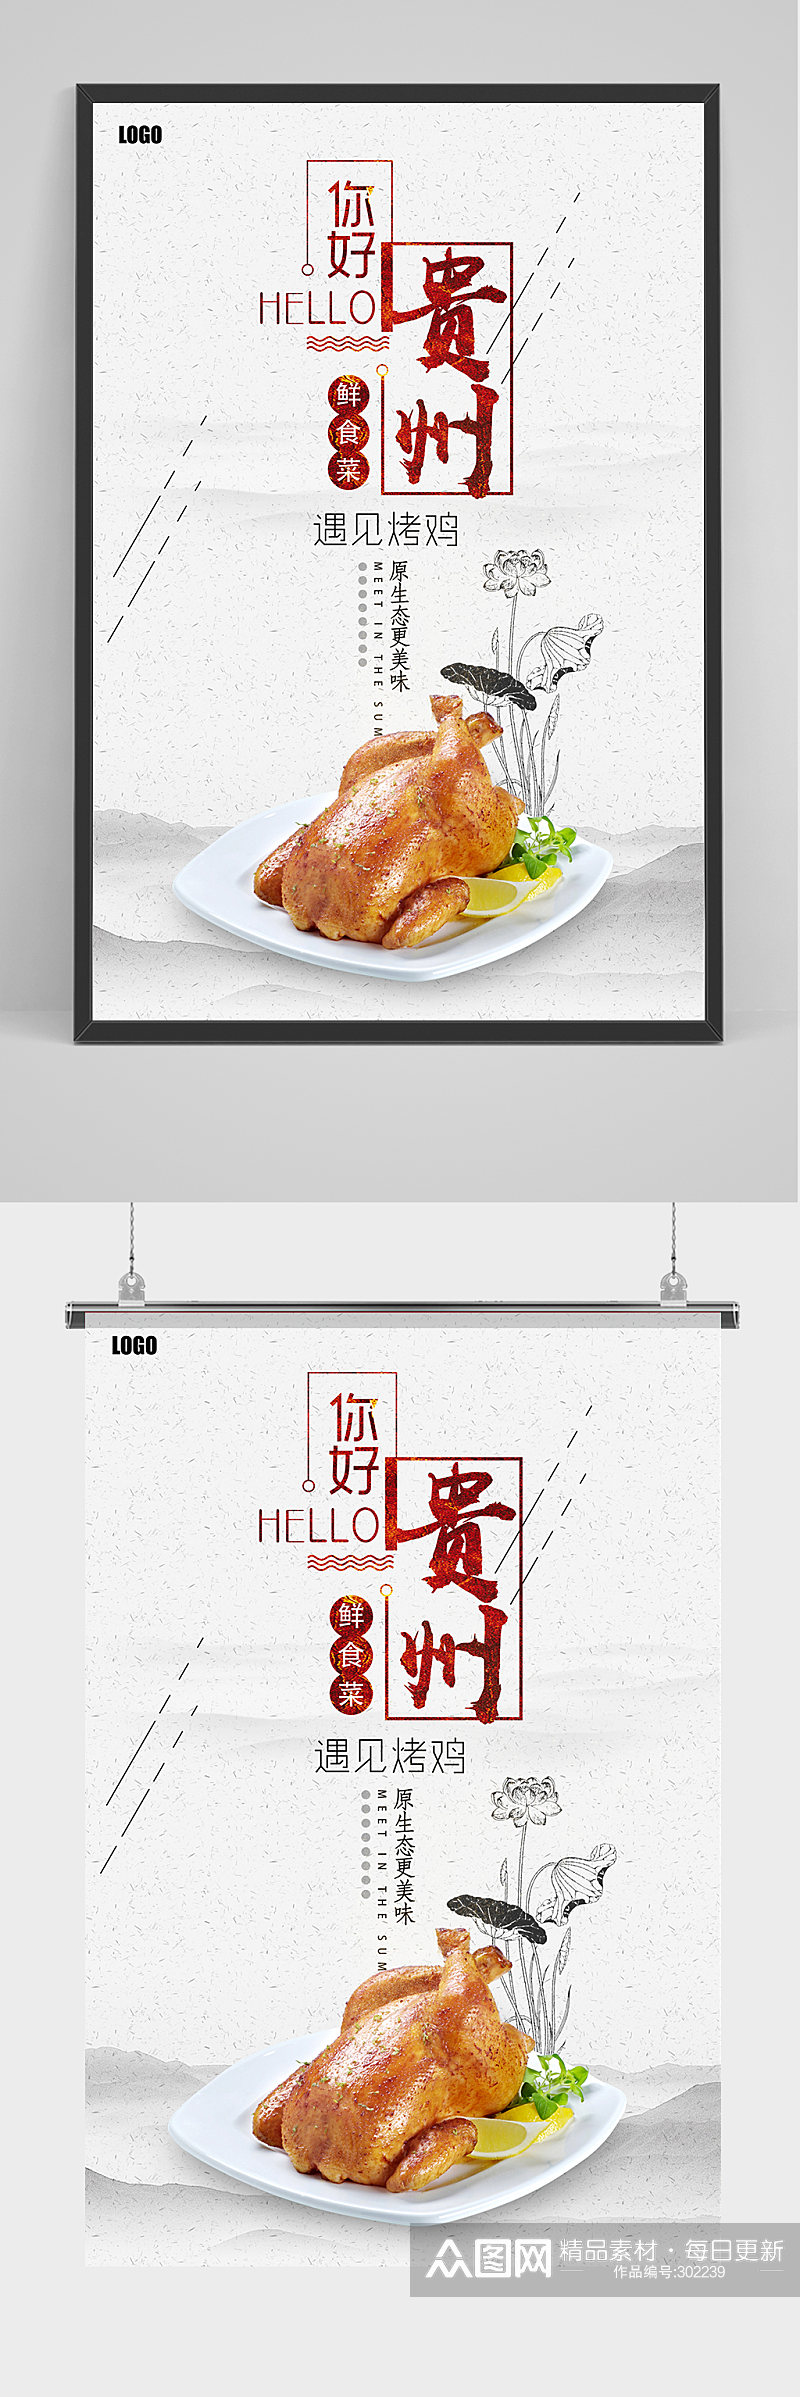 鲜食材贵州烧鸡海报设计素材